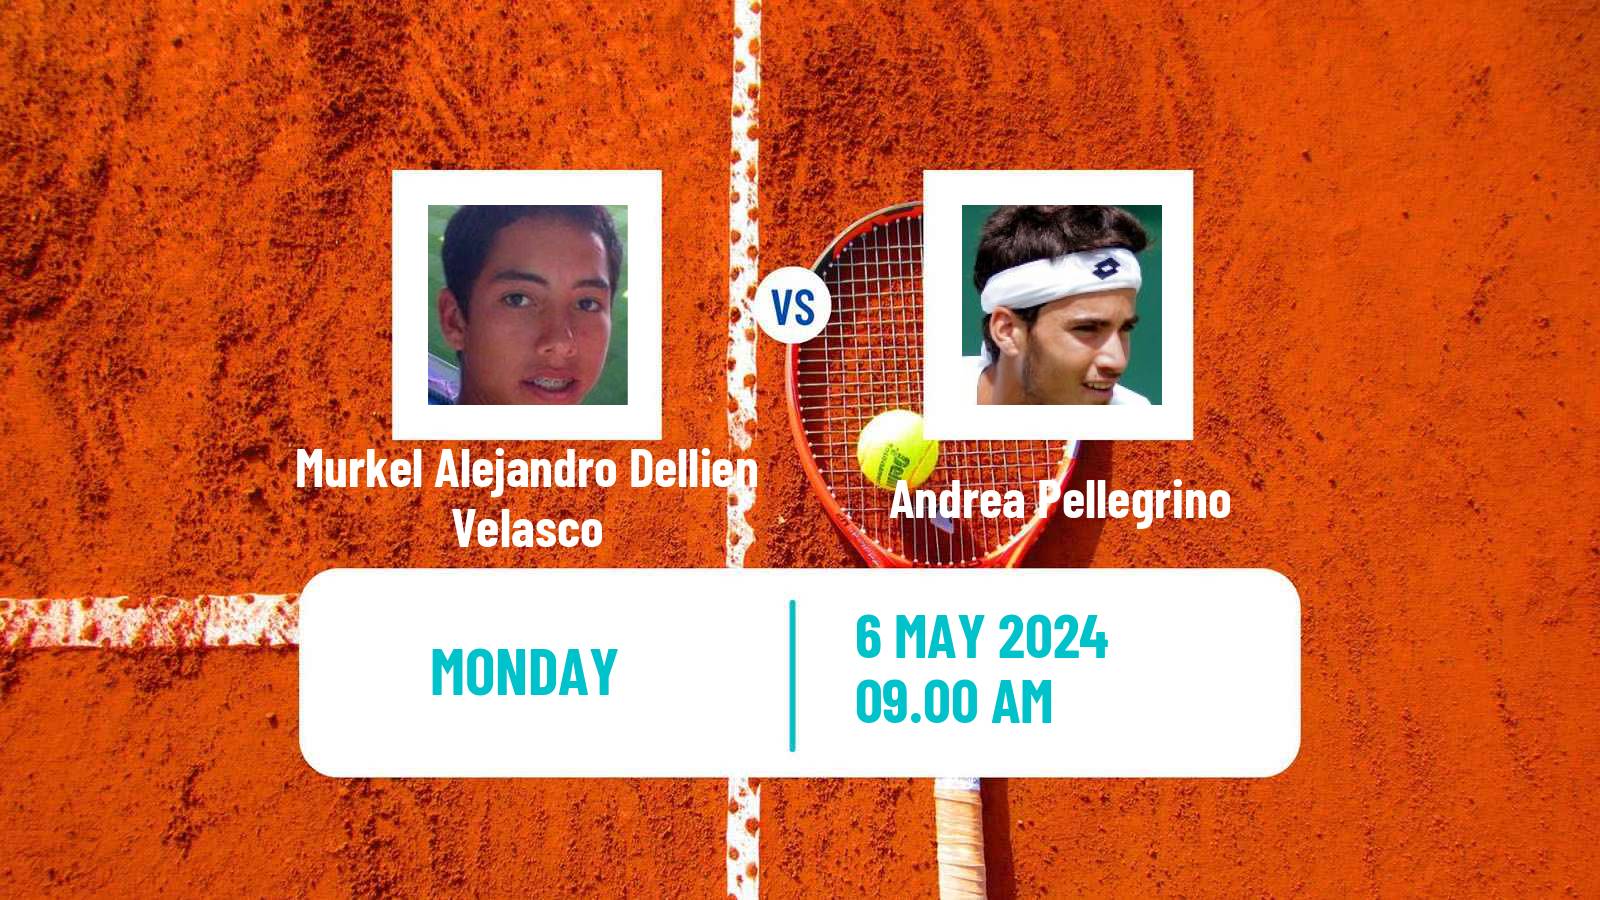 Tennis Francavilla Challenger Men Murkel Alejandro Dellien Velasco - Andrea Pellegrino